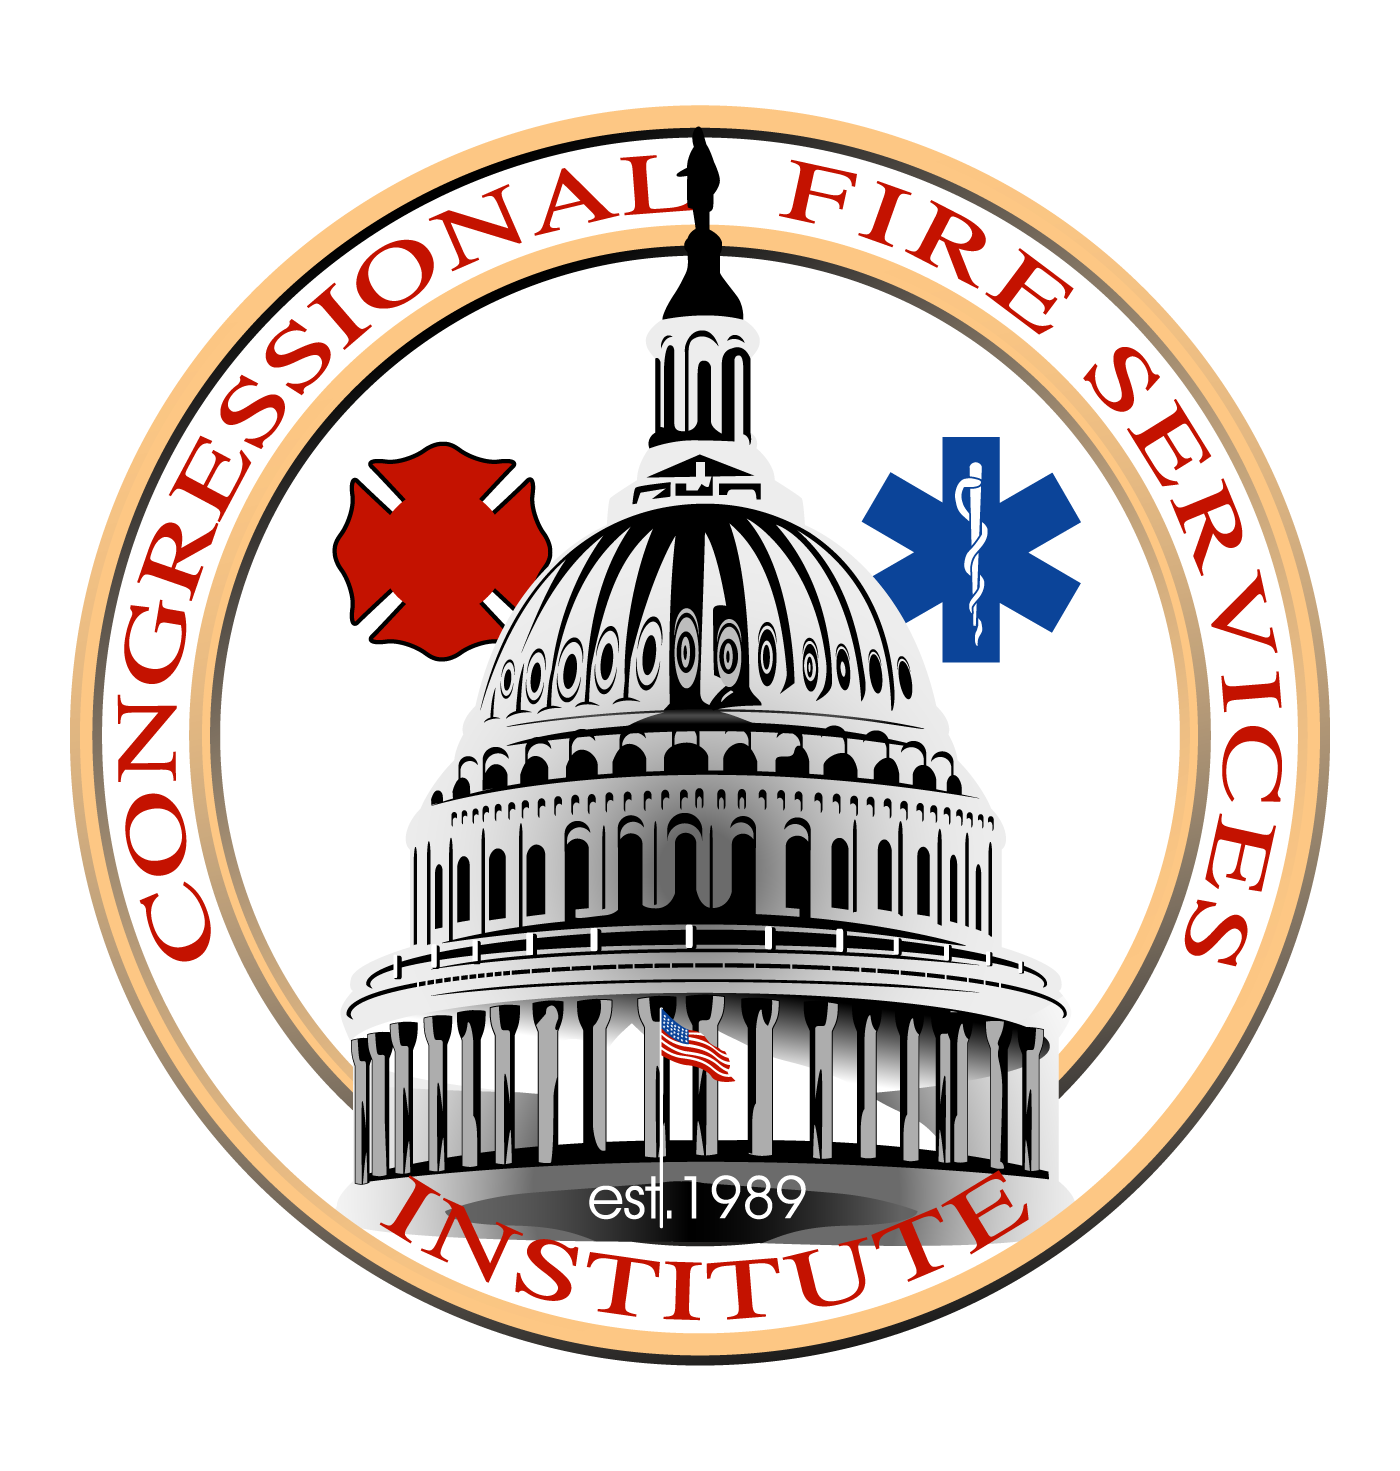 Congressional Fire Services Institute (CFSI)